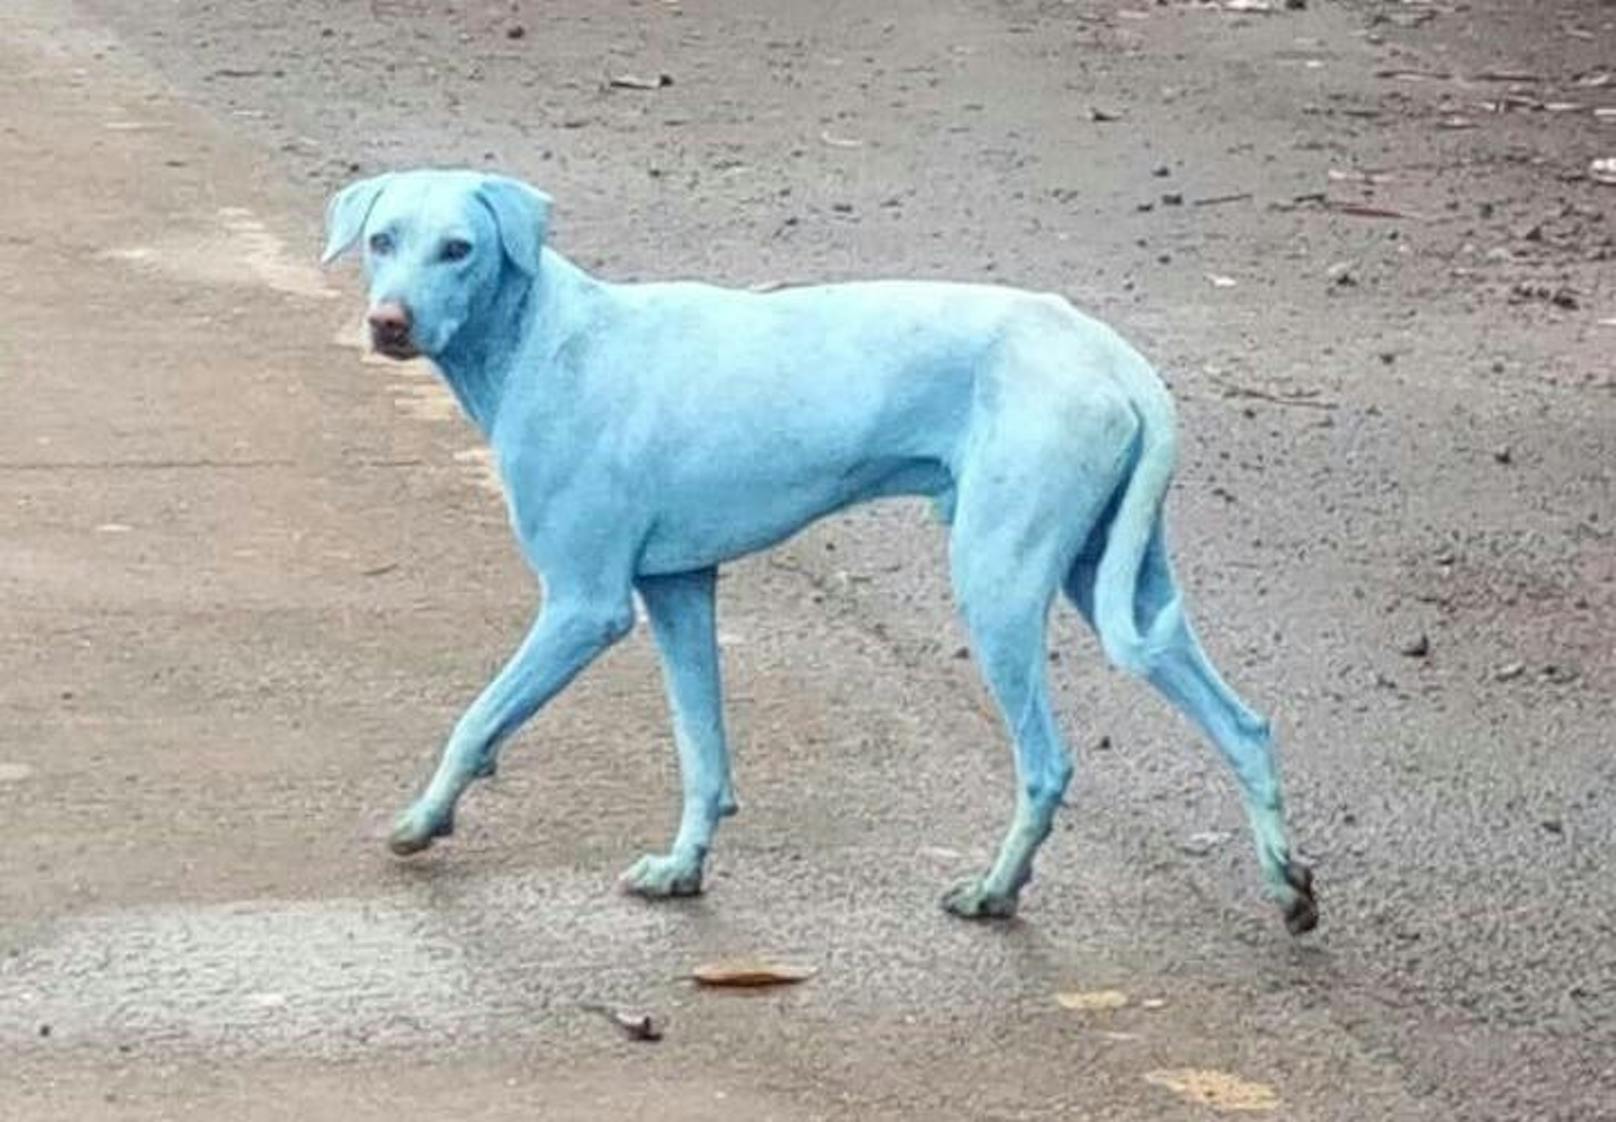 Eine andere Ursache liegt der Blaufärbung einiger Hunde, die in Indien entdeckt wurden, zugrunde.
<b>Mehr Infos: </b> <a href="https://www.heute.at/timeout/virale_videos/story/Blaue-Hunde-in-Indien-schocken-die-Welt-Umweltschutz-Mumbai-47817201">Streunende Hunde werden so blau wie Schlümpfe</a>